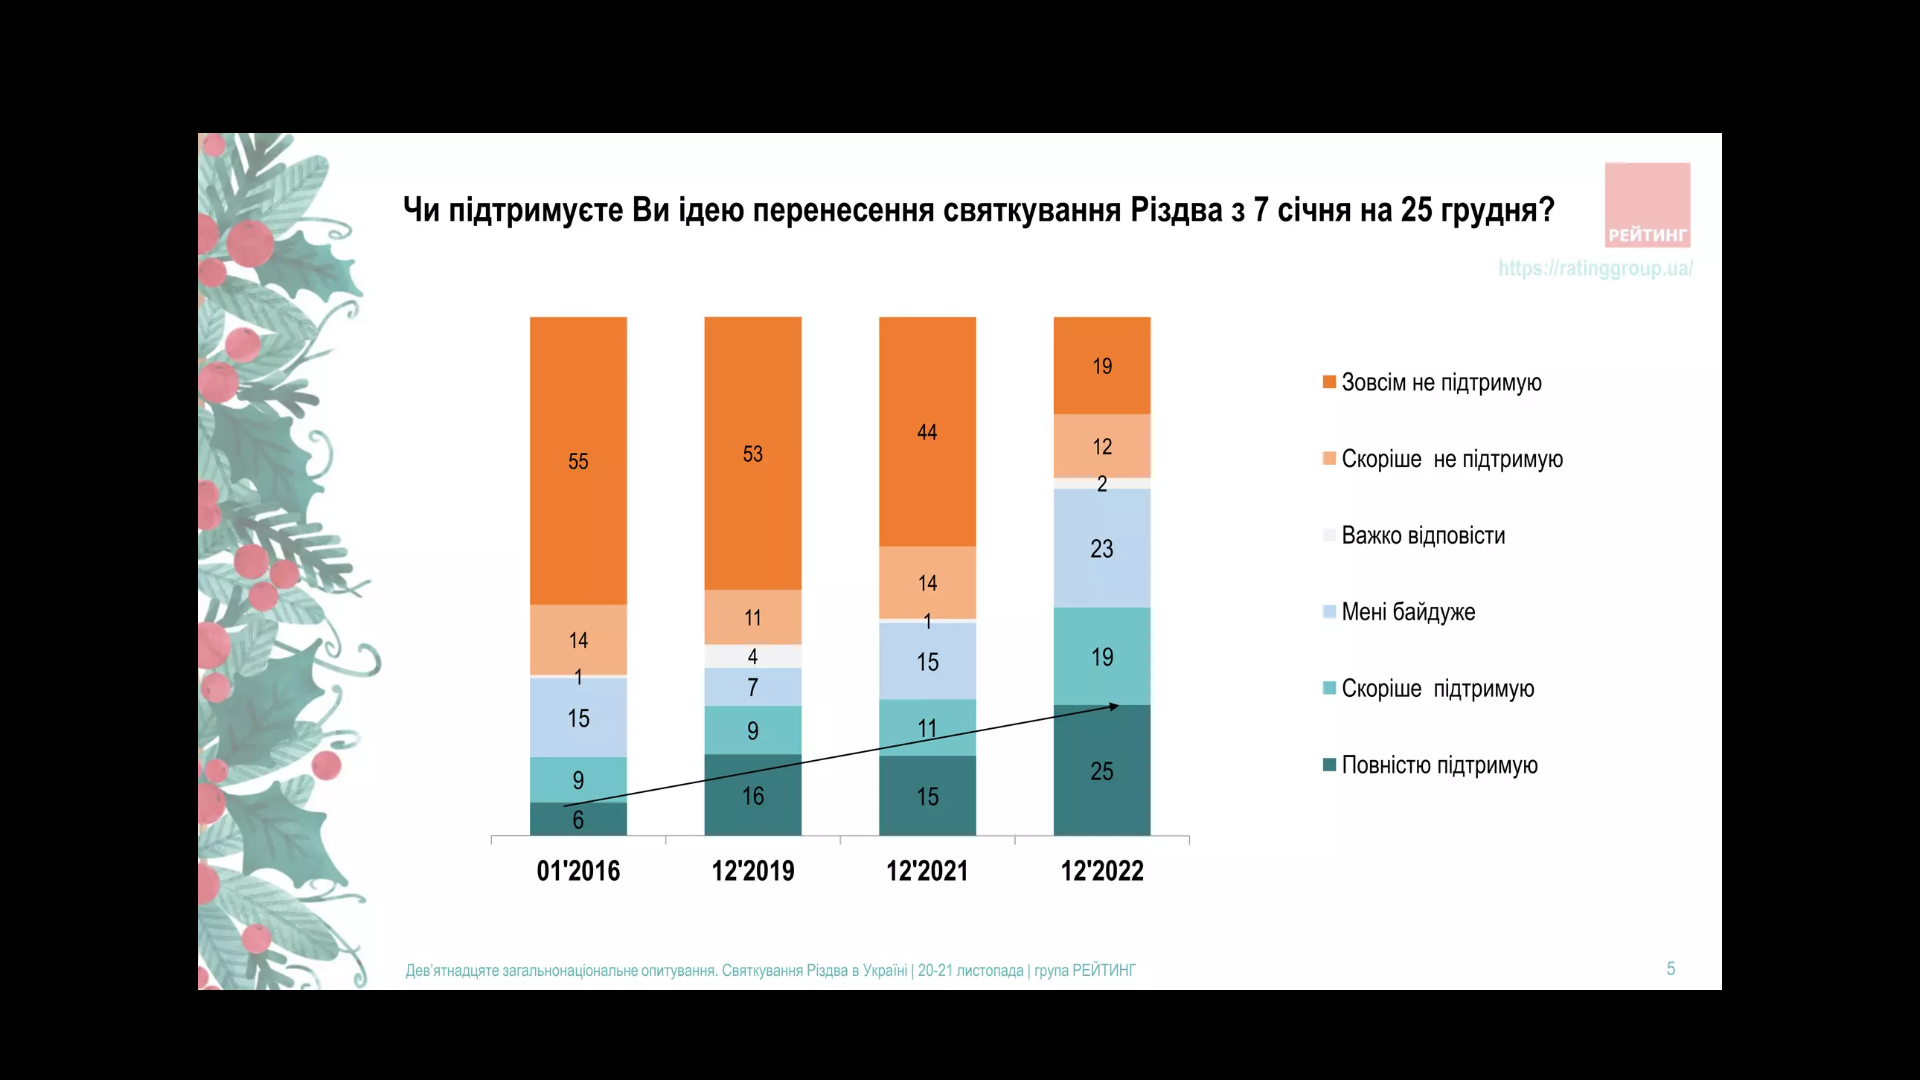 Стало известно, сколько украинцев поддерживают перенос празднования Рождества на 25 декабря: данные опроса